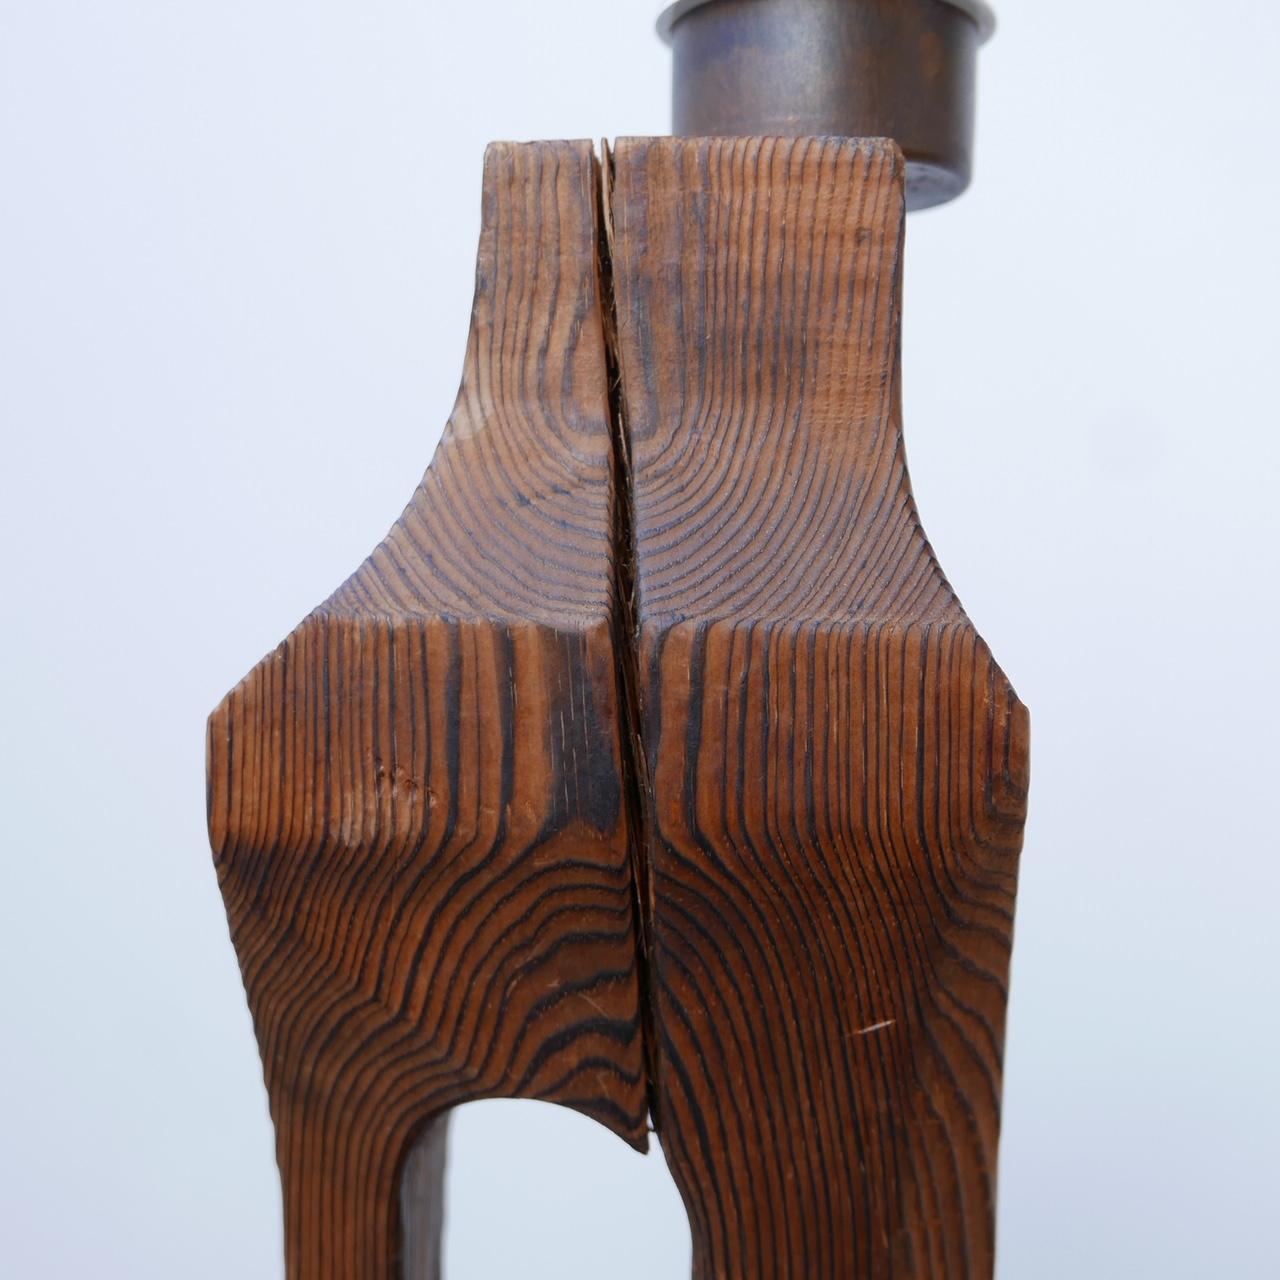 20th Century Belgium Brutalist Wooden Table Lamp